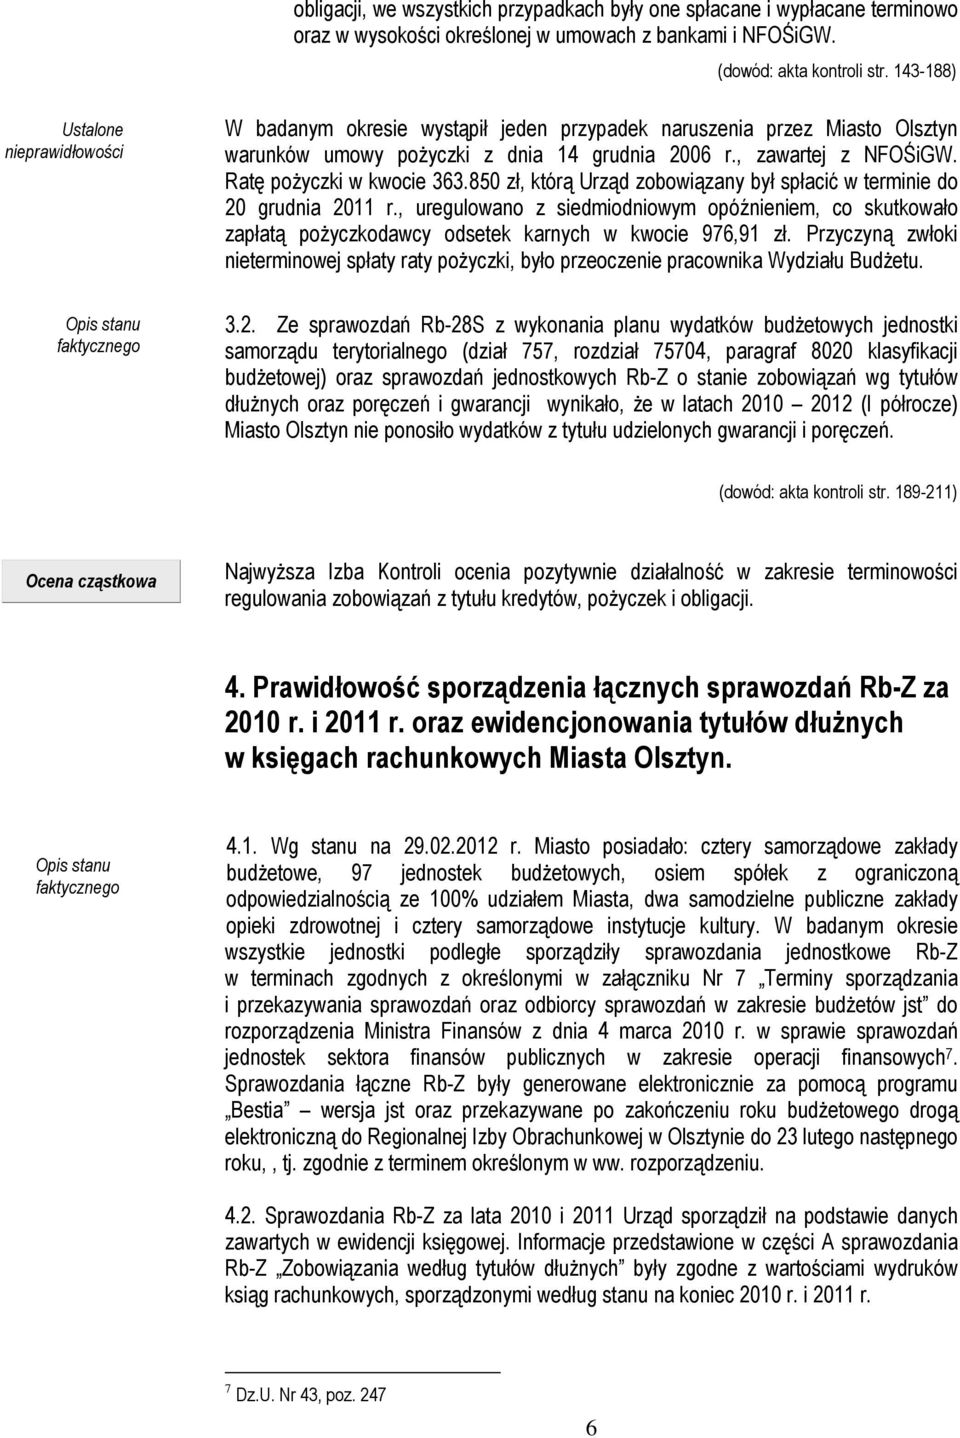 Ratę pożyczki w kwocie 363.850 zł, którą Urząd zobowiązany był spłacić w terminie do 20 grudnia 2011 r.